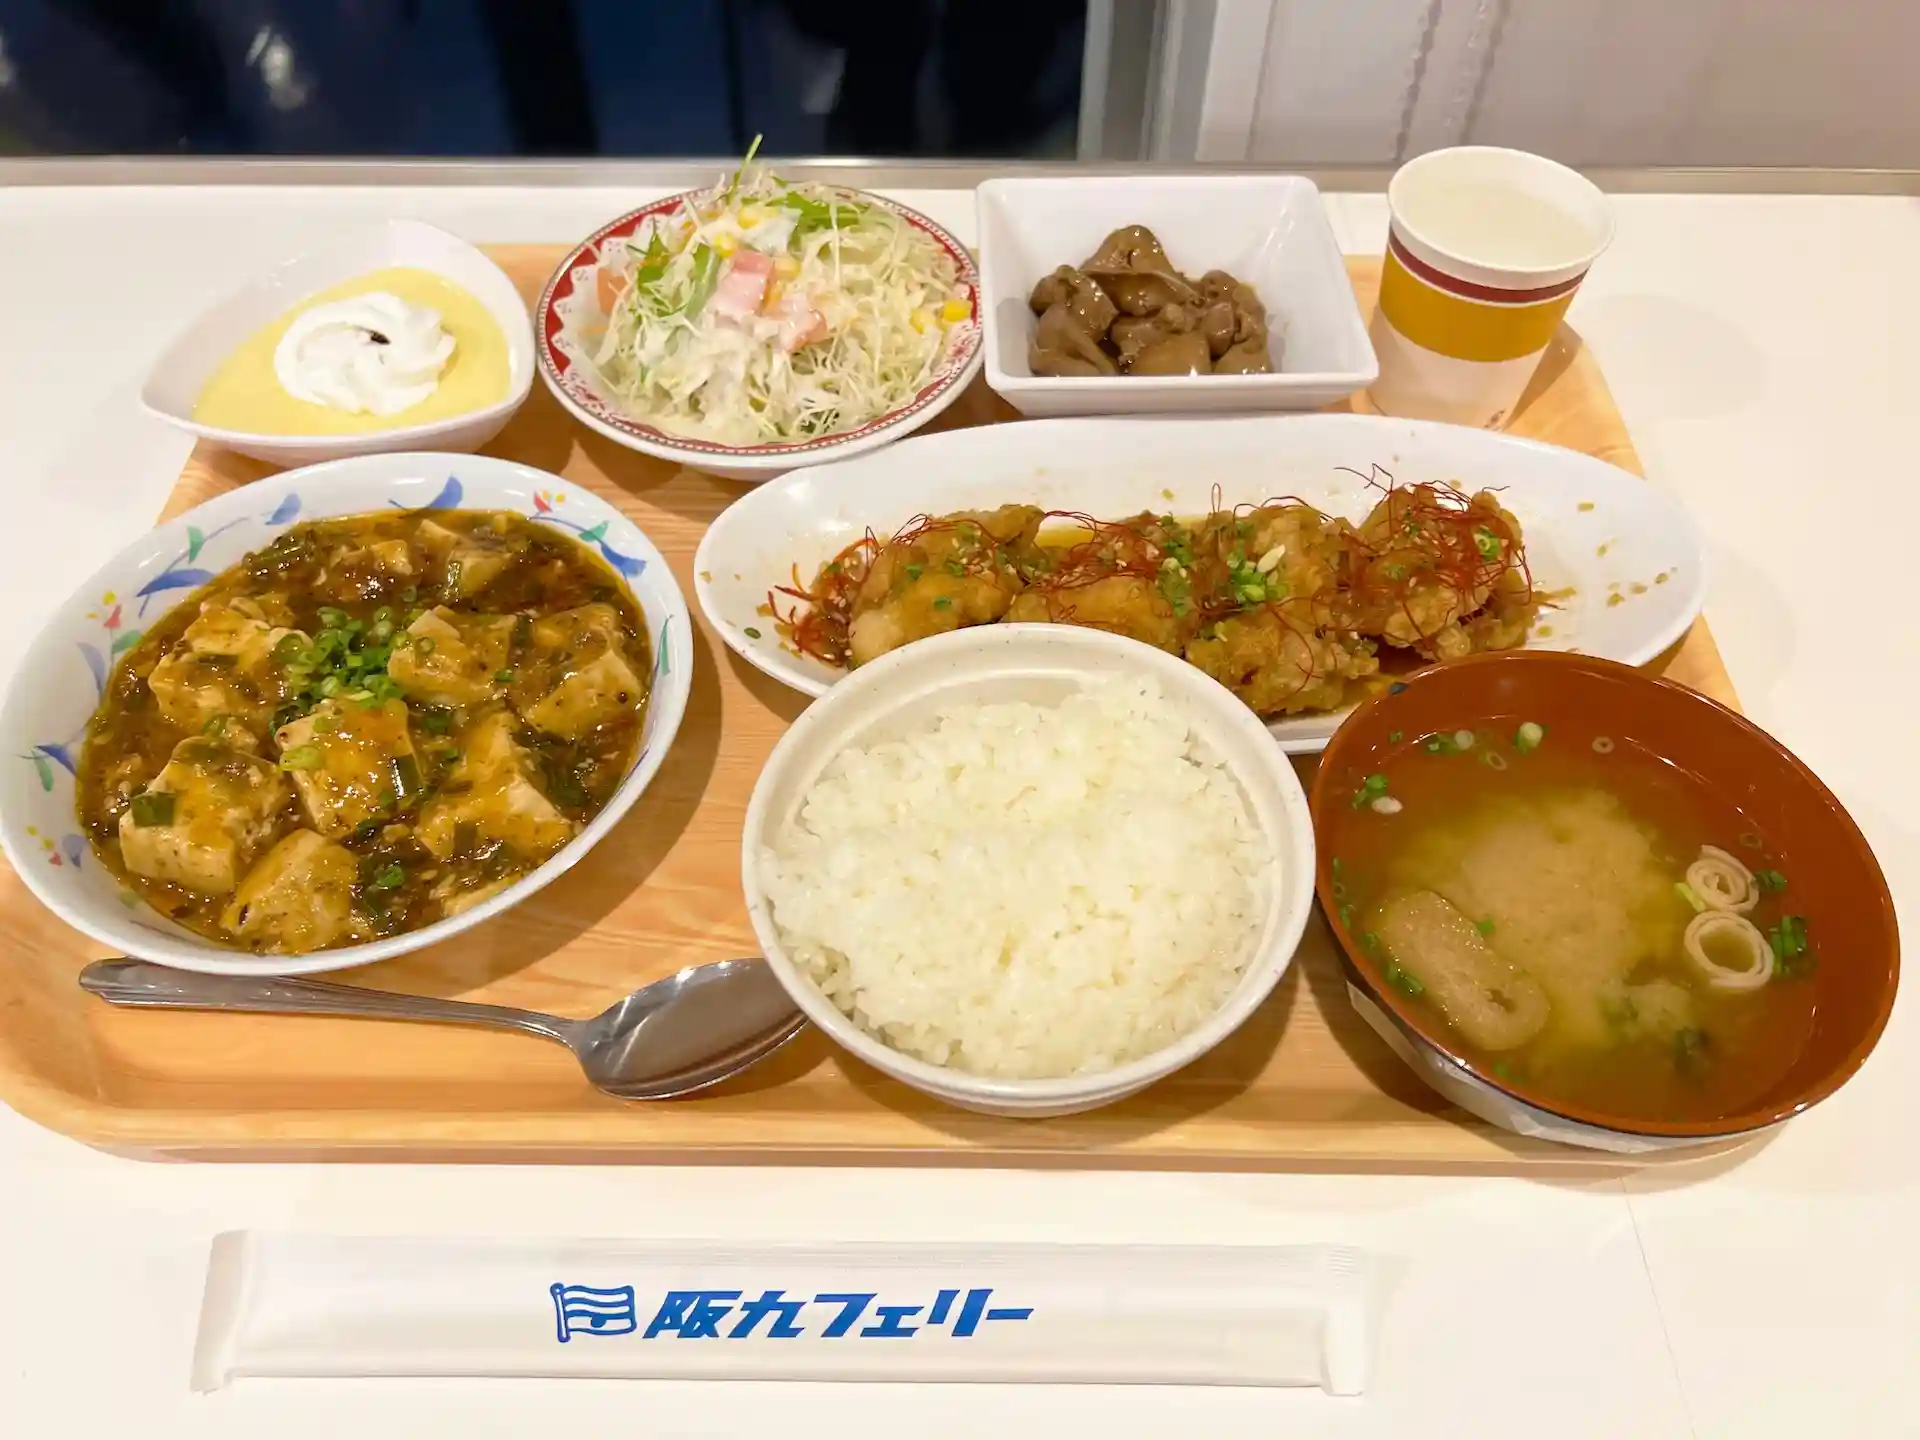 阪九轮渡Settsu号船内餐厅晚餐菜单